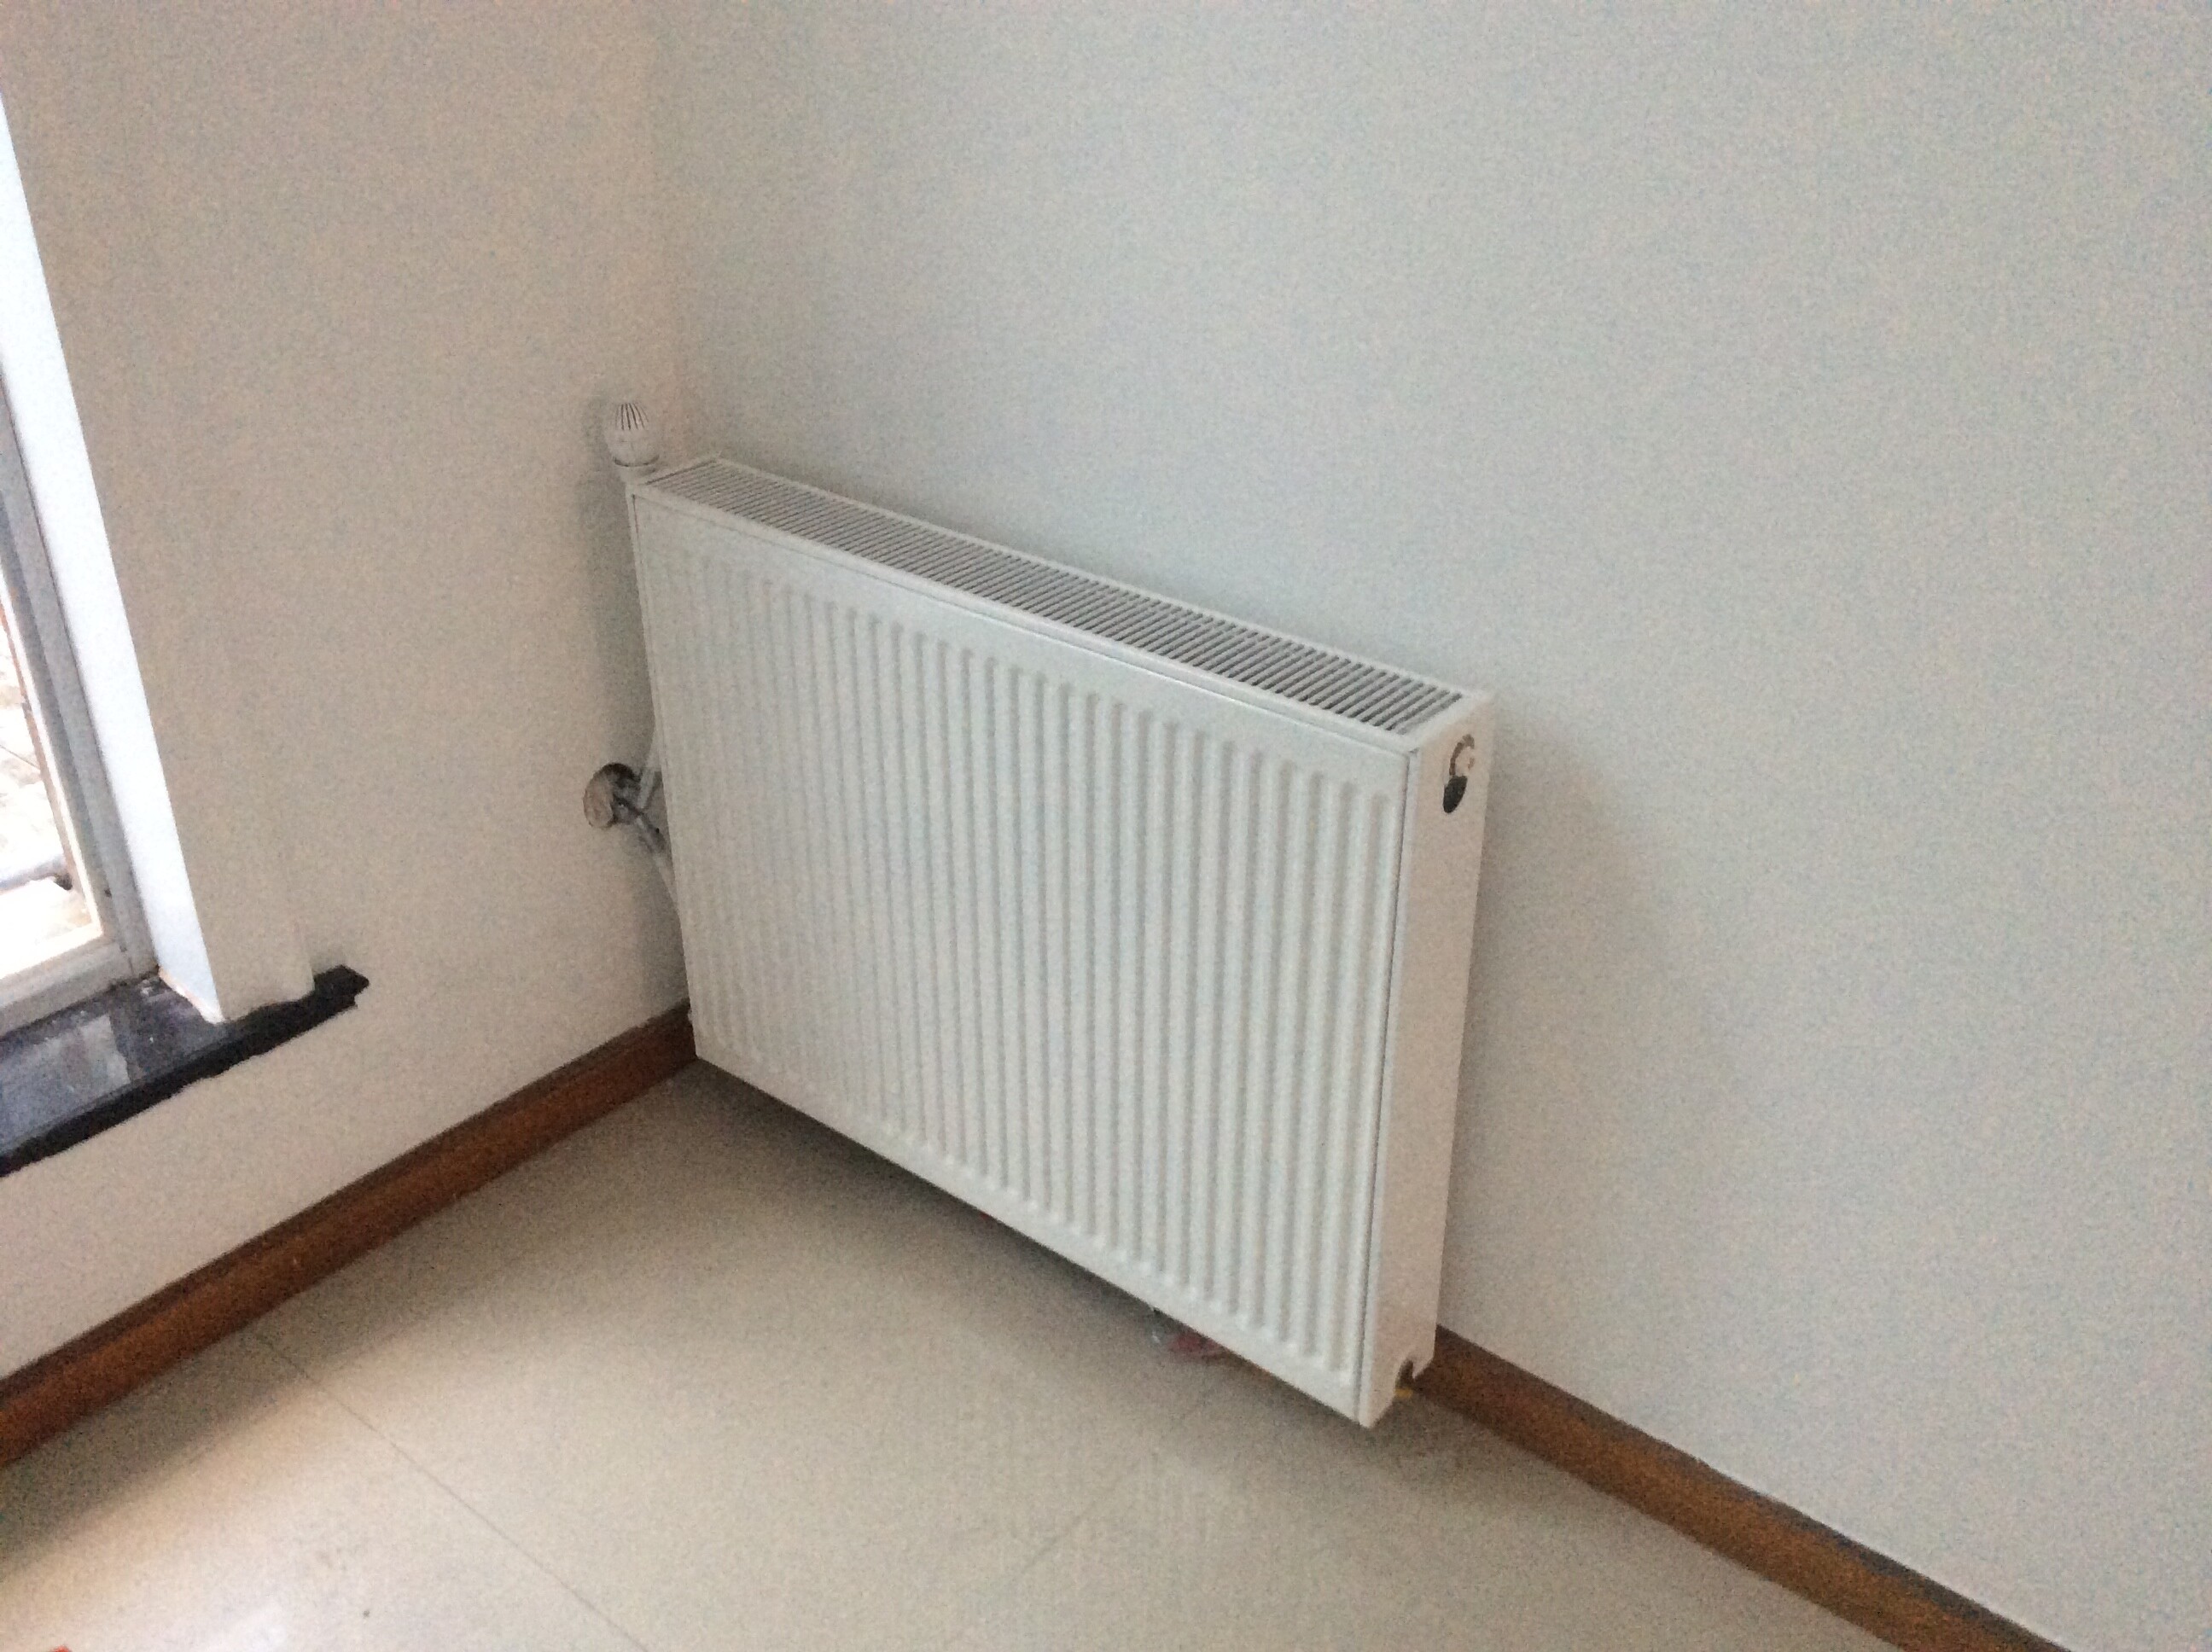 对于暖气片的安装位置,采暖专家在方案中提到,卧室里的暖气片放在墙角